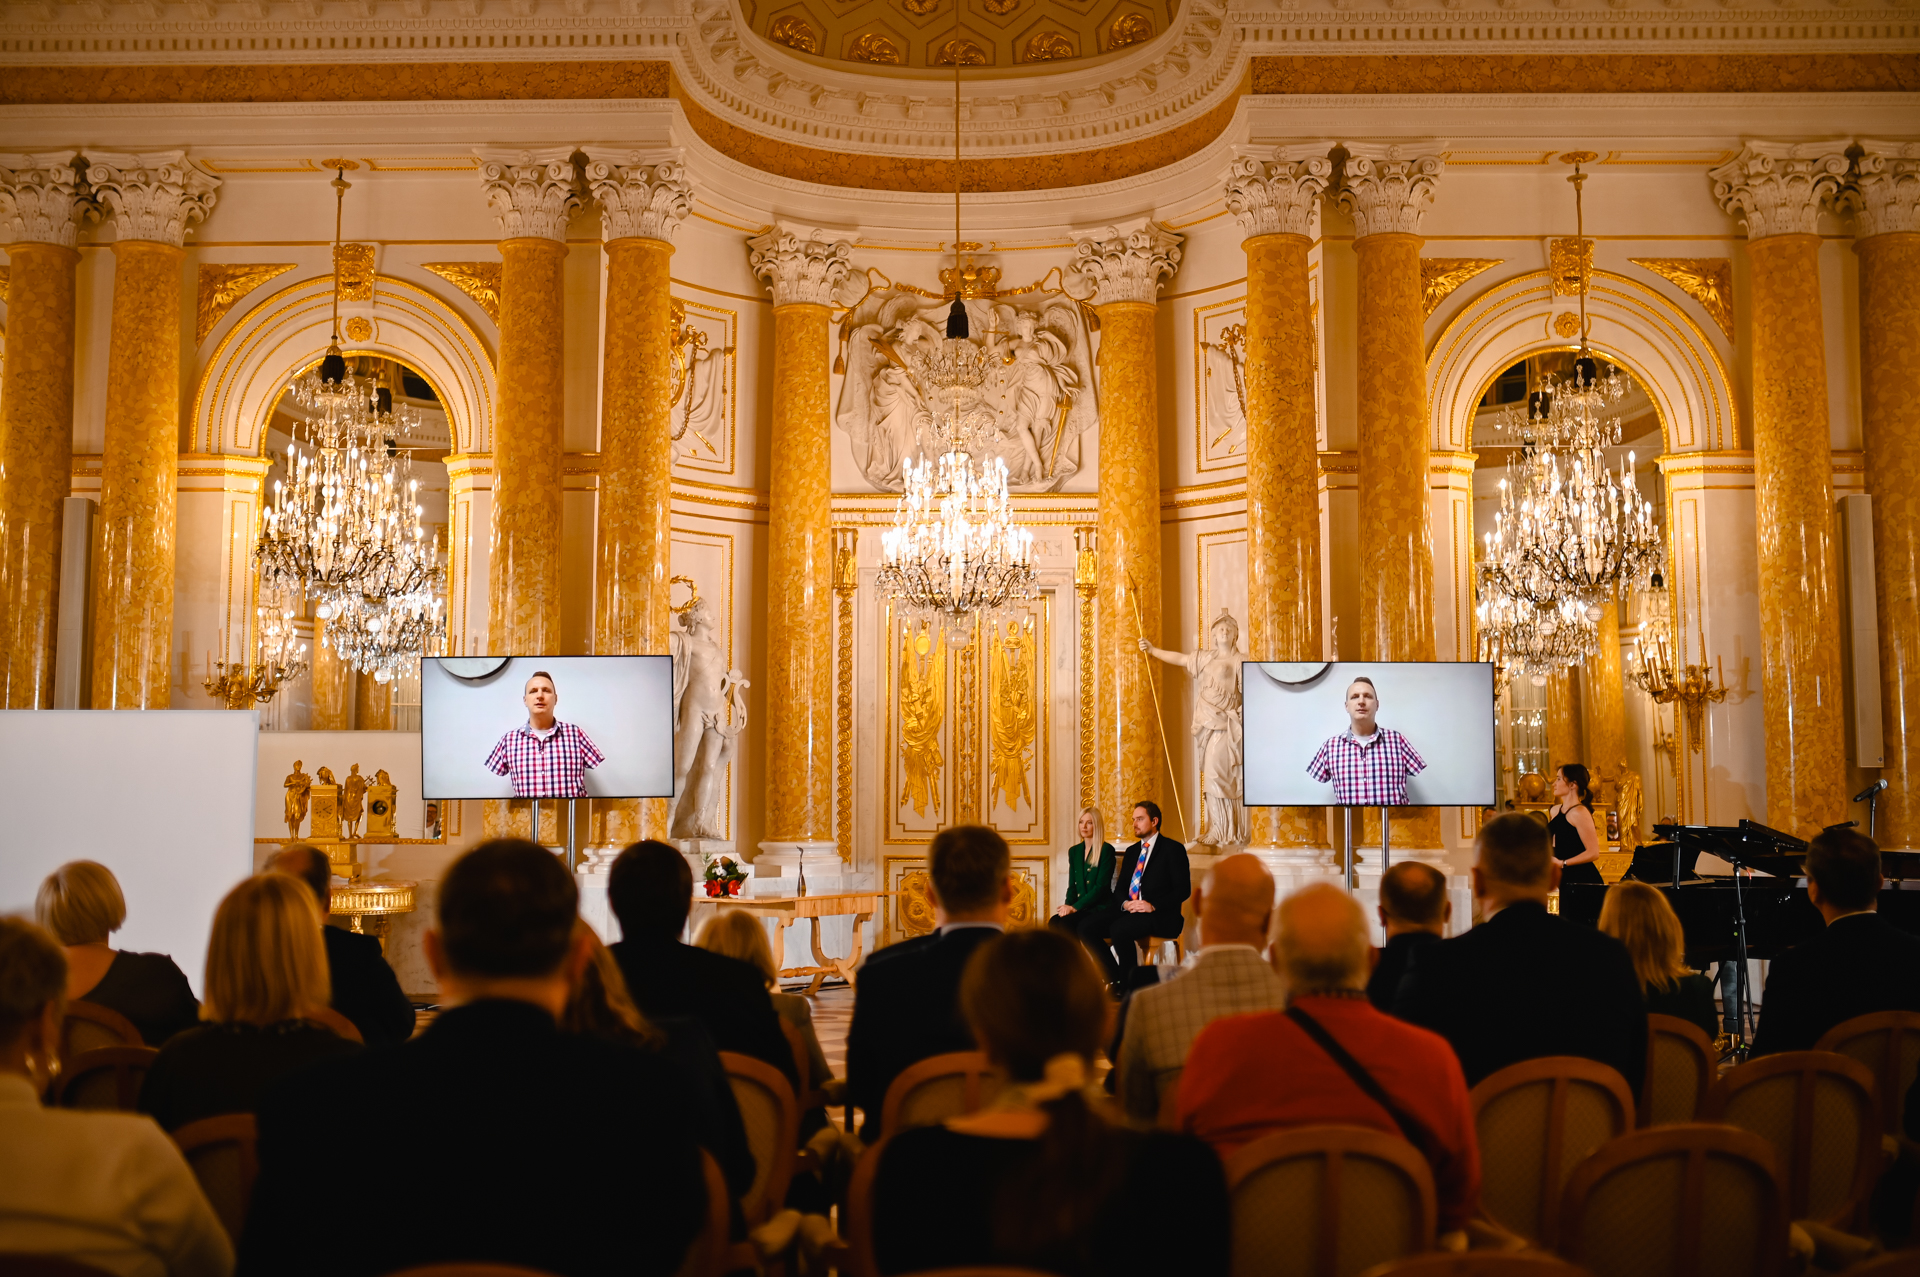 Reprezntacyjna sala Zamku Królewskiego ze złoconymi sztukateriami, na scenie, po o bu stronach 2 bilbordy z wizerunkiem laureata Przemysława Wieczorka.